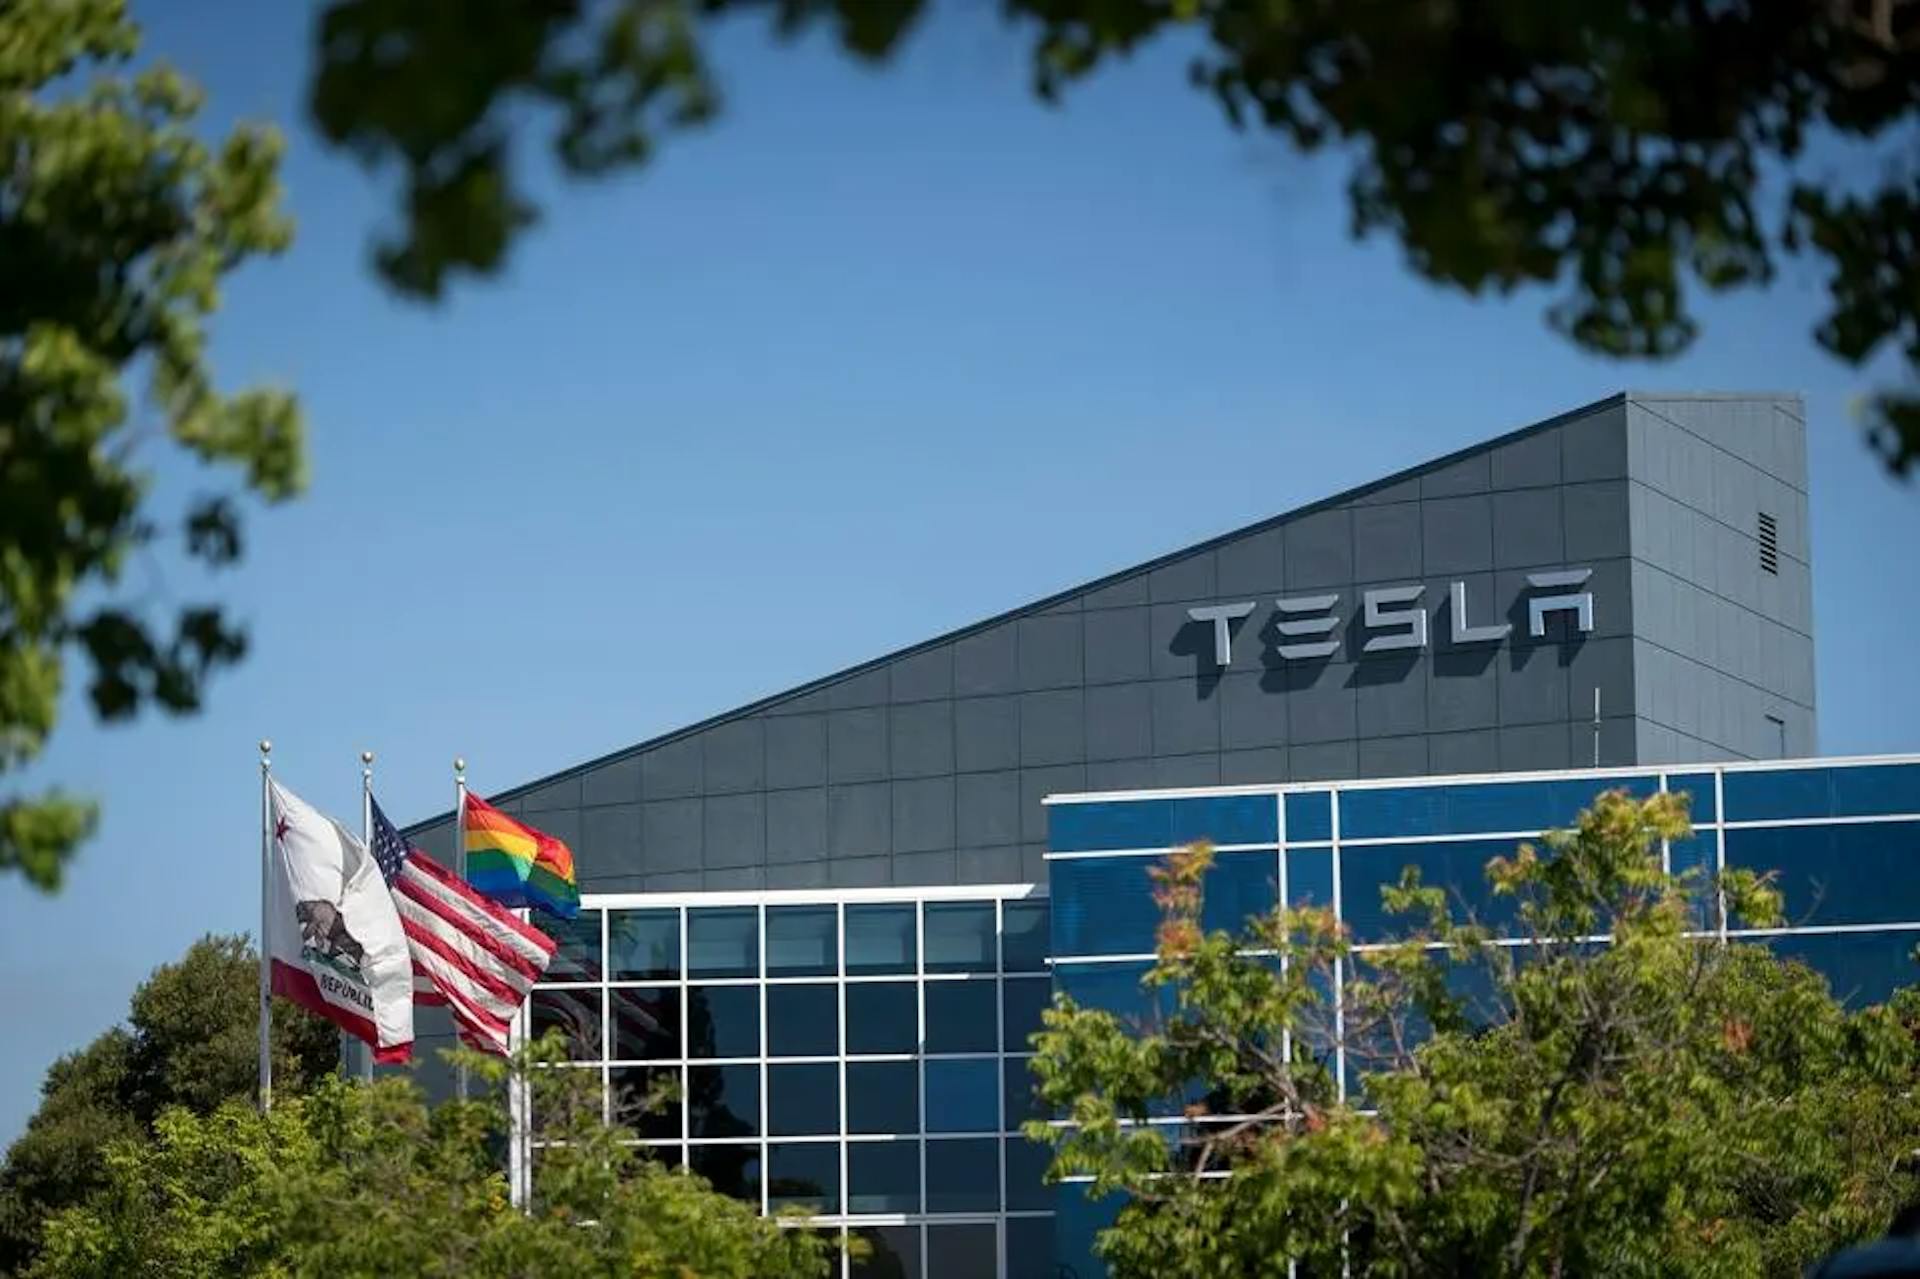 Tesla Headquarters
